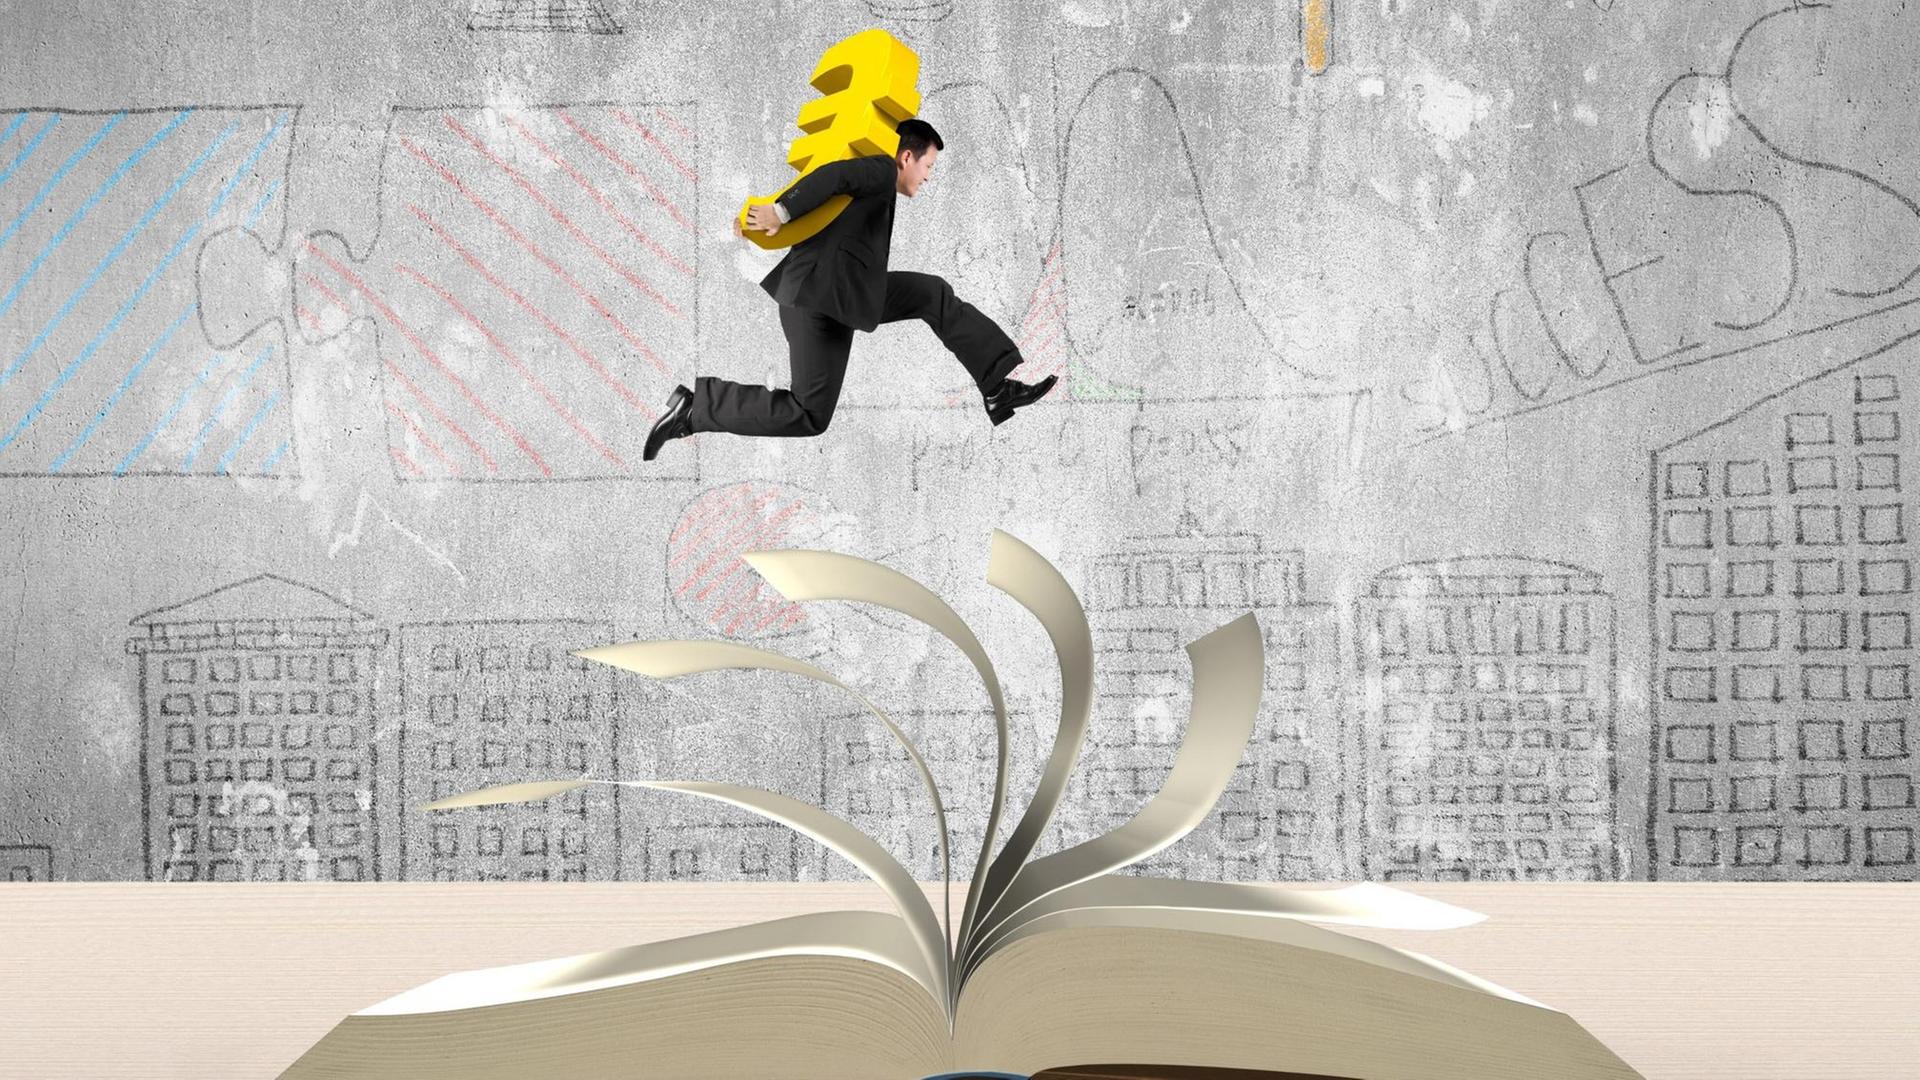 Die Illustration zeigt einen Mann im schwarzen Anzug, der die Hände auf dem Rücken hat, darin ein gelbes Eurozeichen trägt und über ein aufgeschlagenes Buch springt.